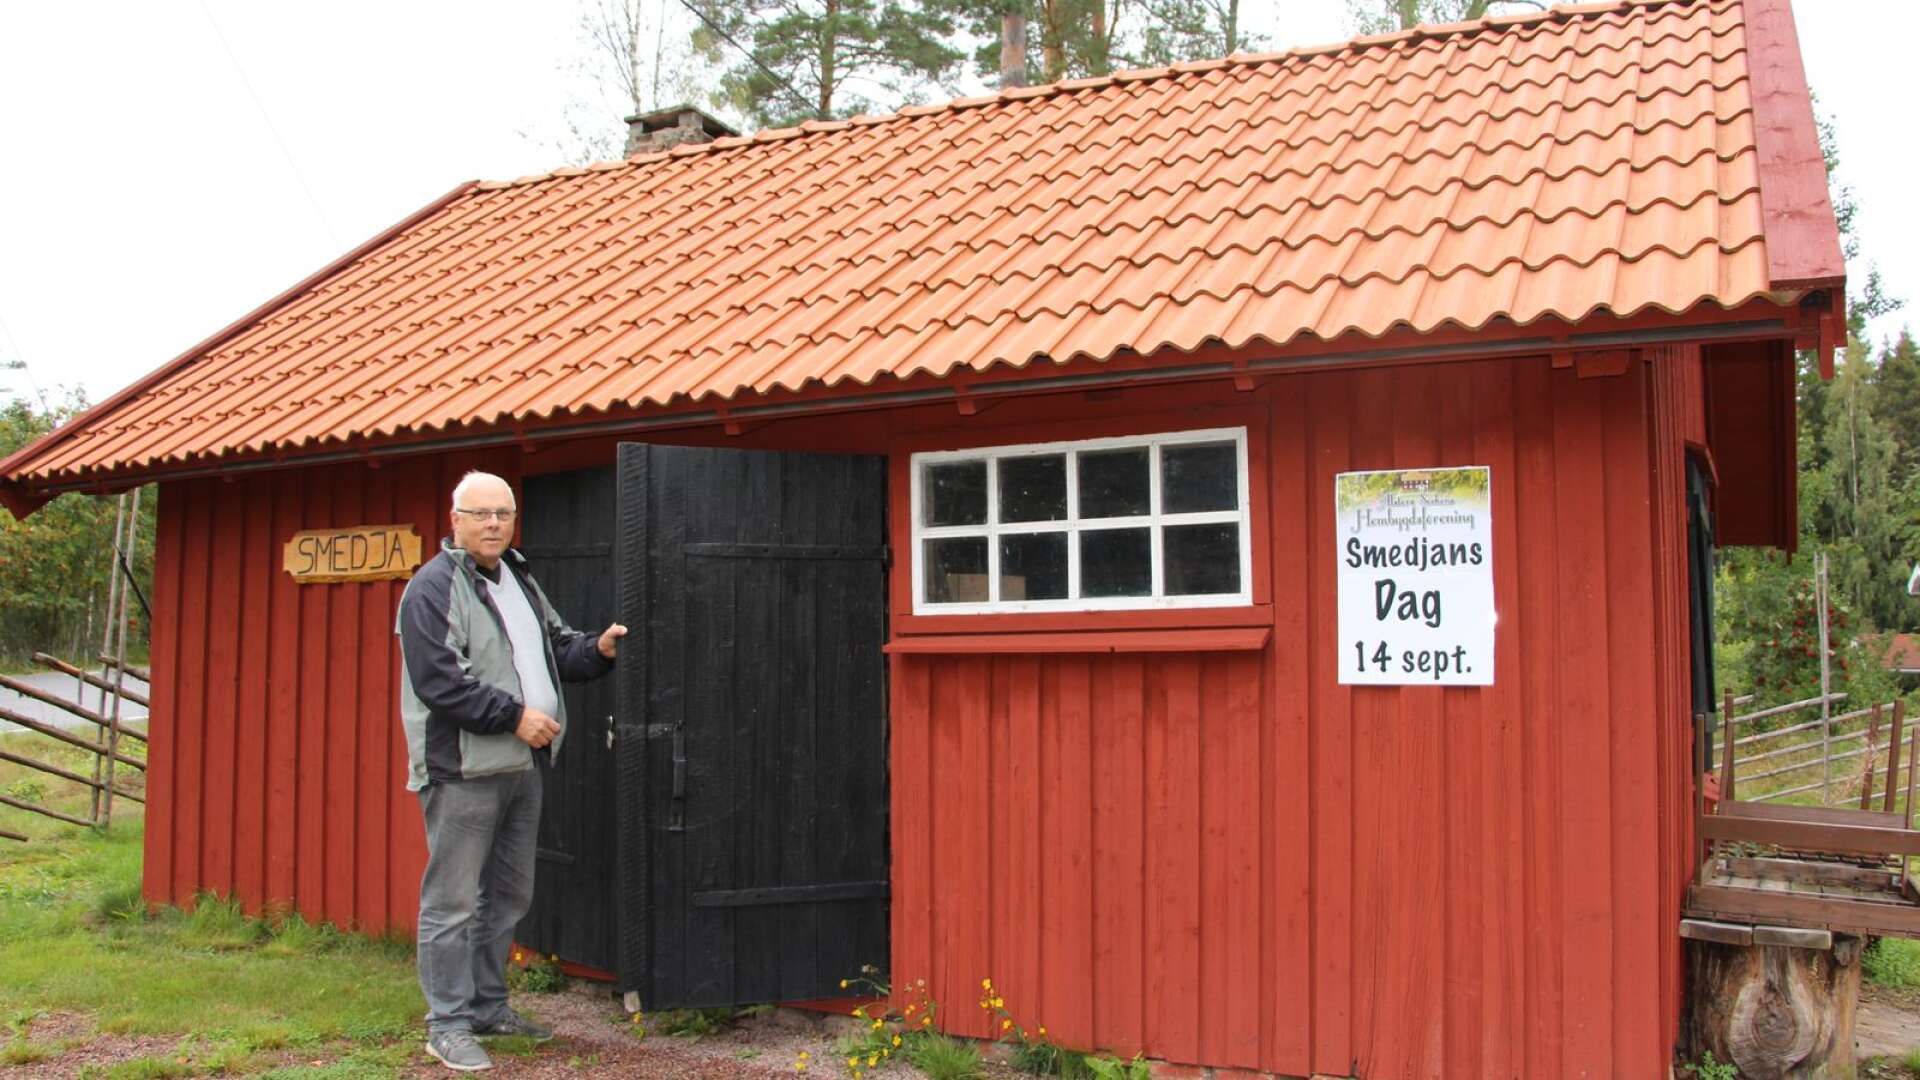 Smedjan som rustats upp ligger vid hembygdsgården i Tällerud.